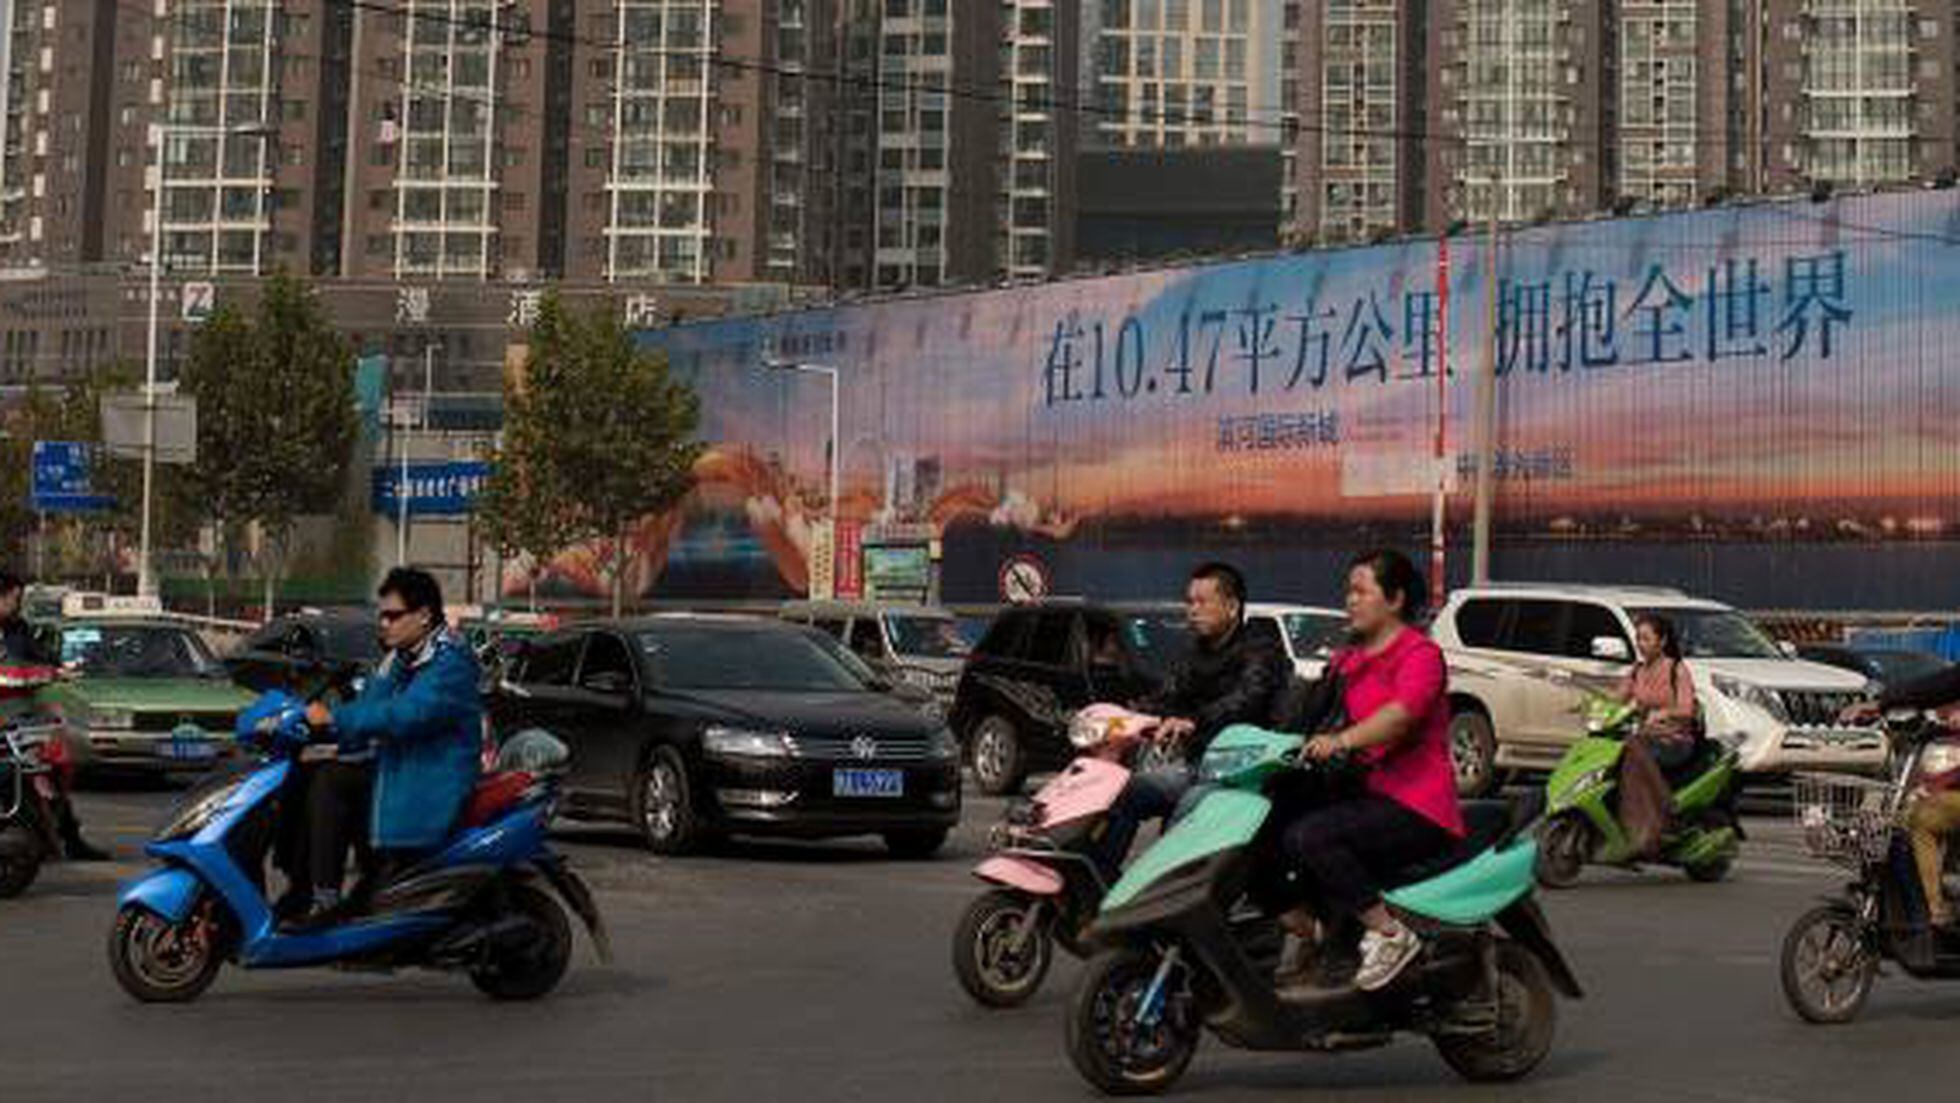 Linda! Nova moto esportiva chinesa parece clássico das pistas